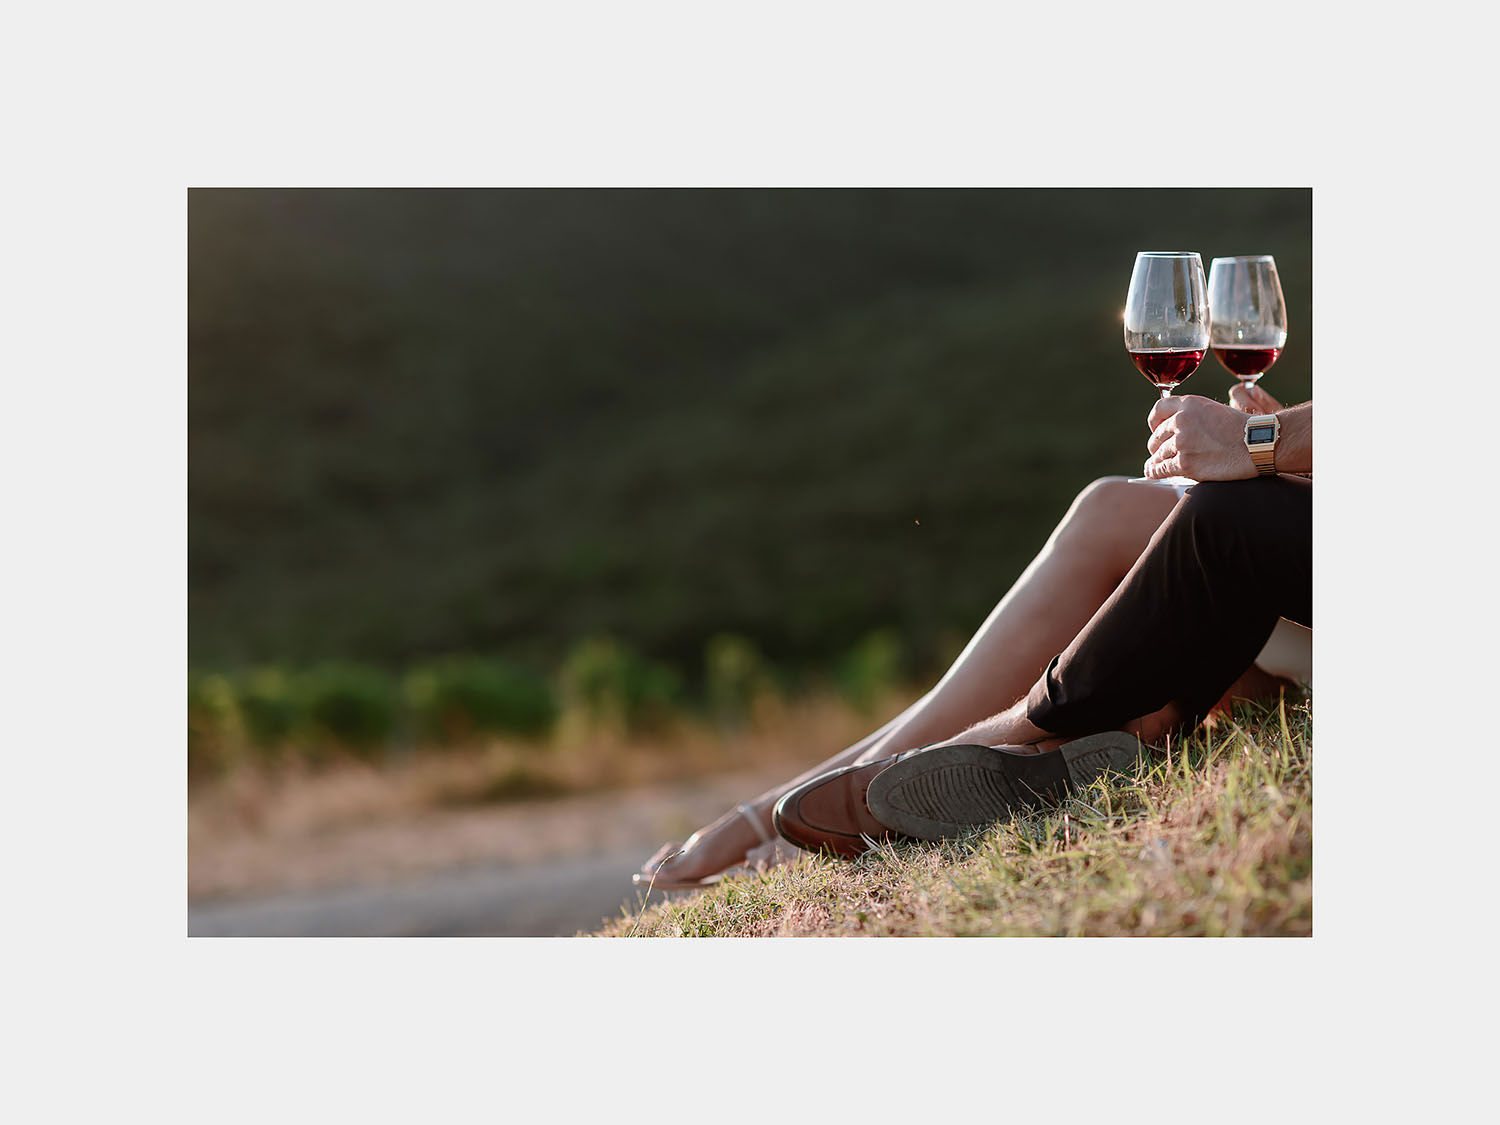 engagement photographertuscany montalcino wine tasting for two